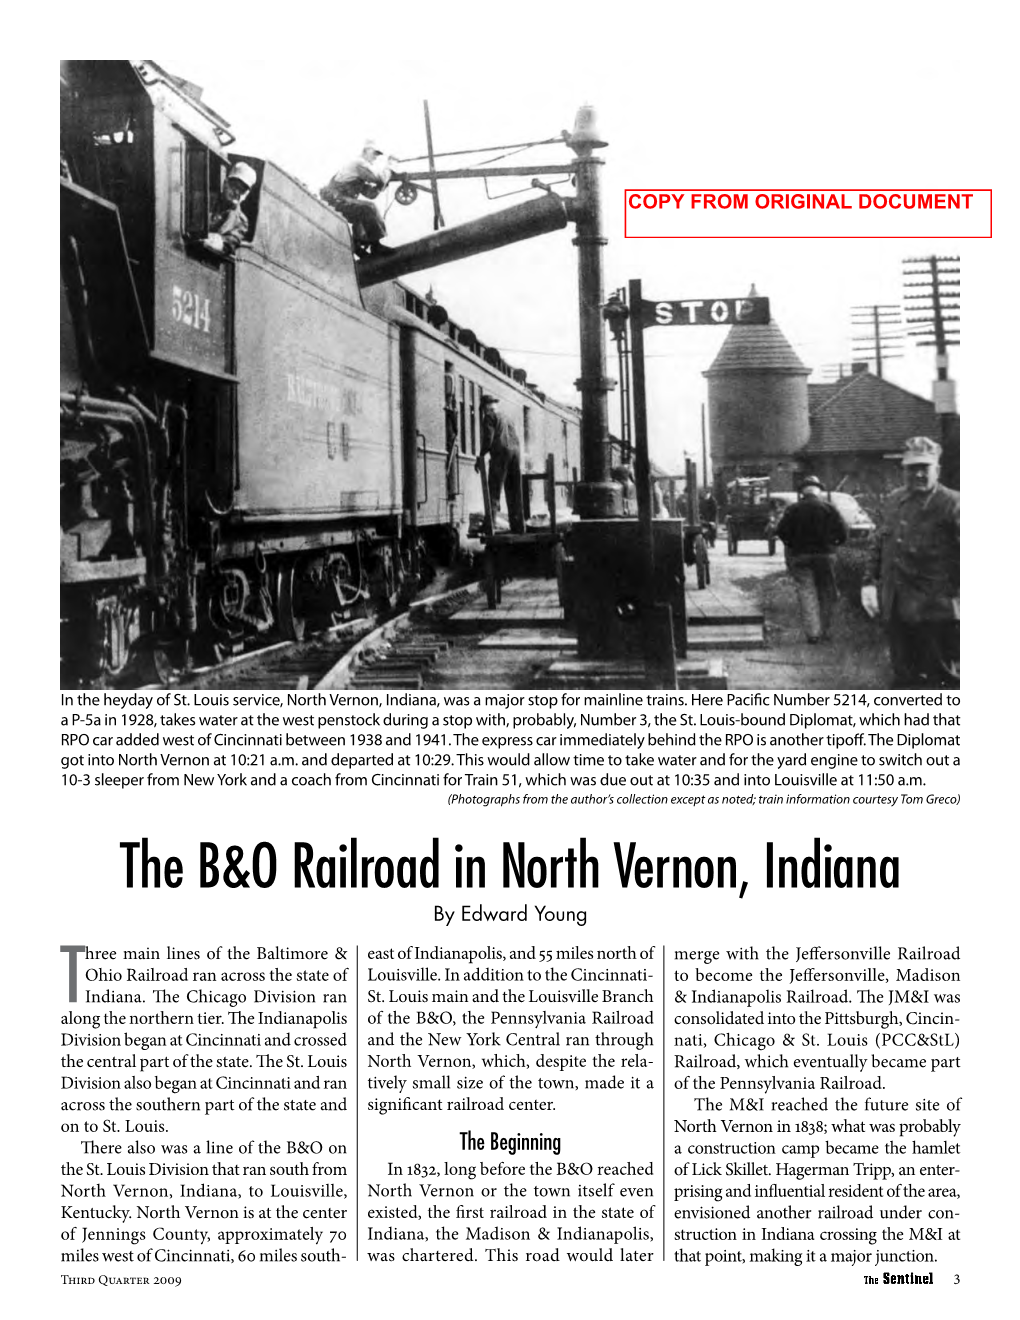 The B&O Railroad in North Vernon, Indiana